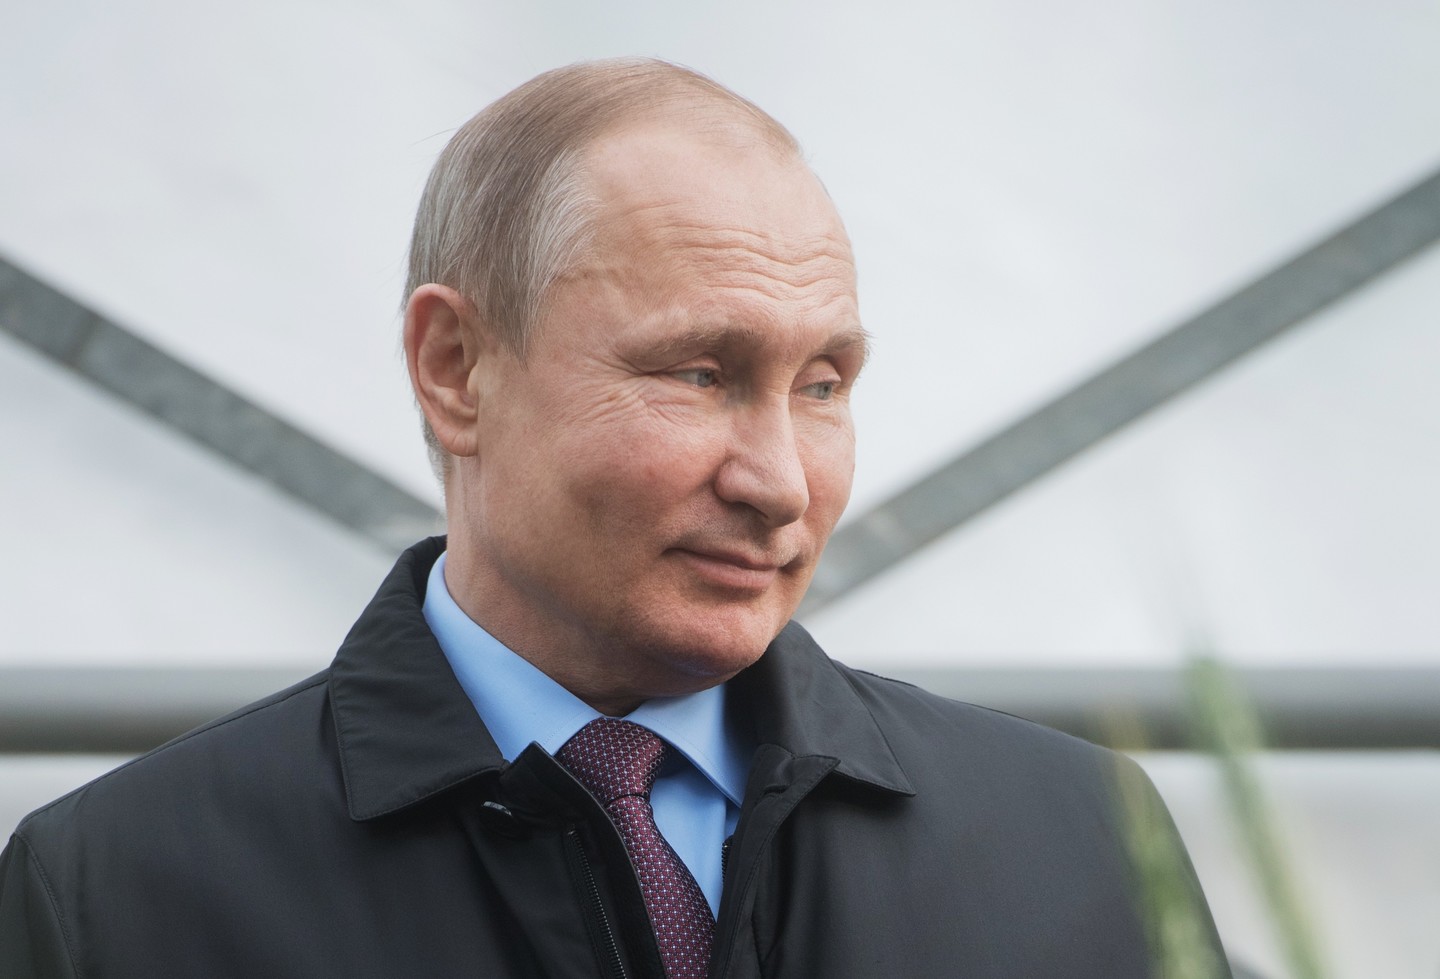 "Россия устала видеть одно и то же лицо в Кремле", - политолог из РФ рассказала, когда уйдет Путин